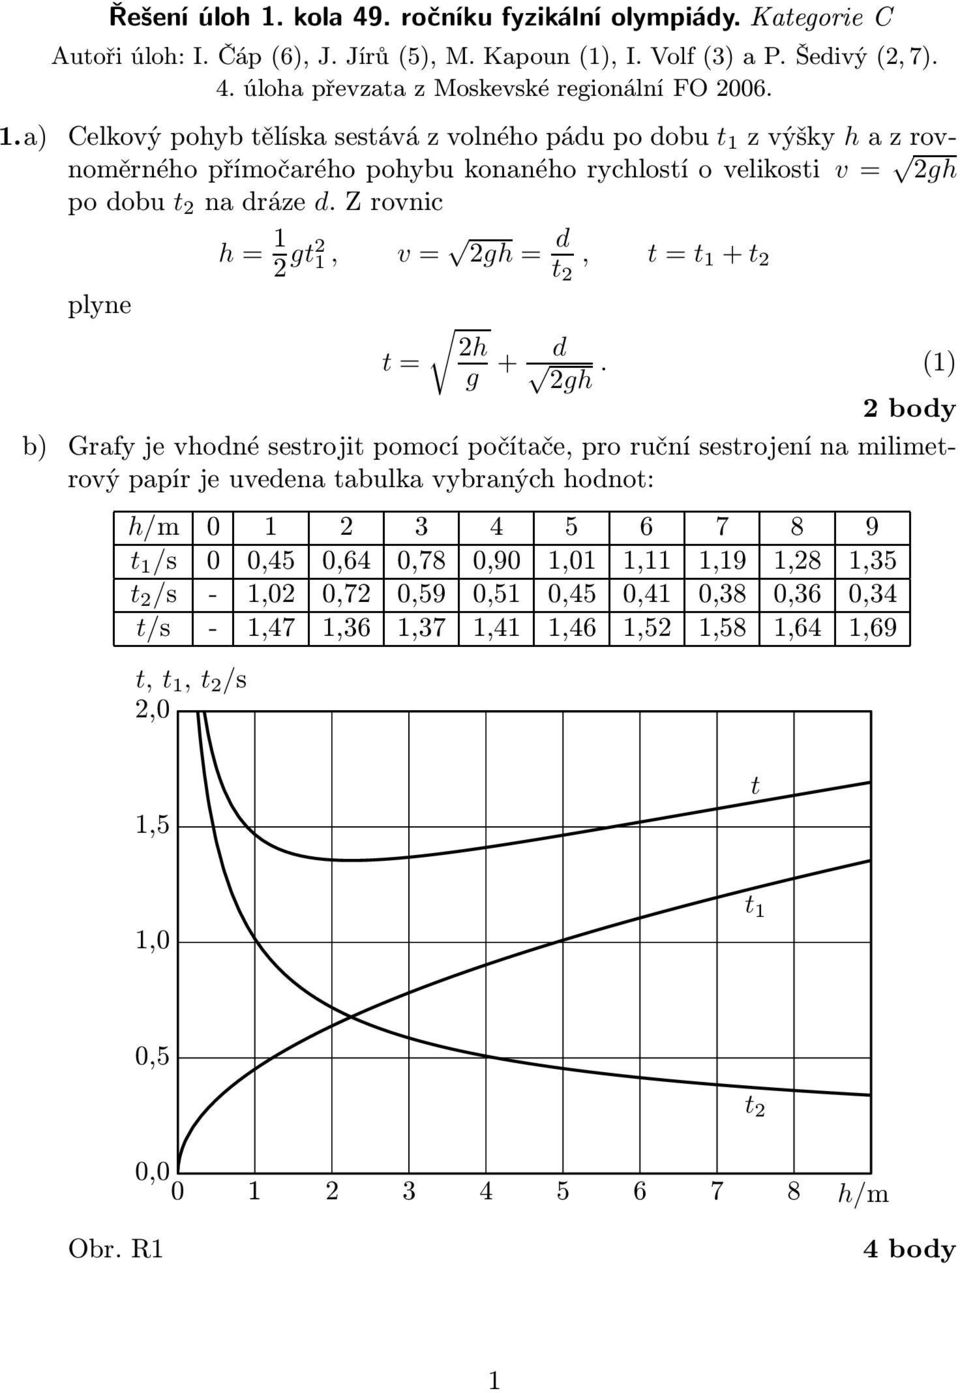 d t, t=t + t plyne h t= g + d ) gh body b) Grafy je vhodné sestrojit pomocí počítače, pro ruční sestrojení na milimetrový papír je uvedena tabulka vybraných